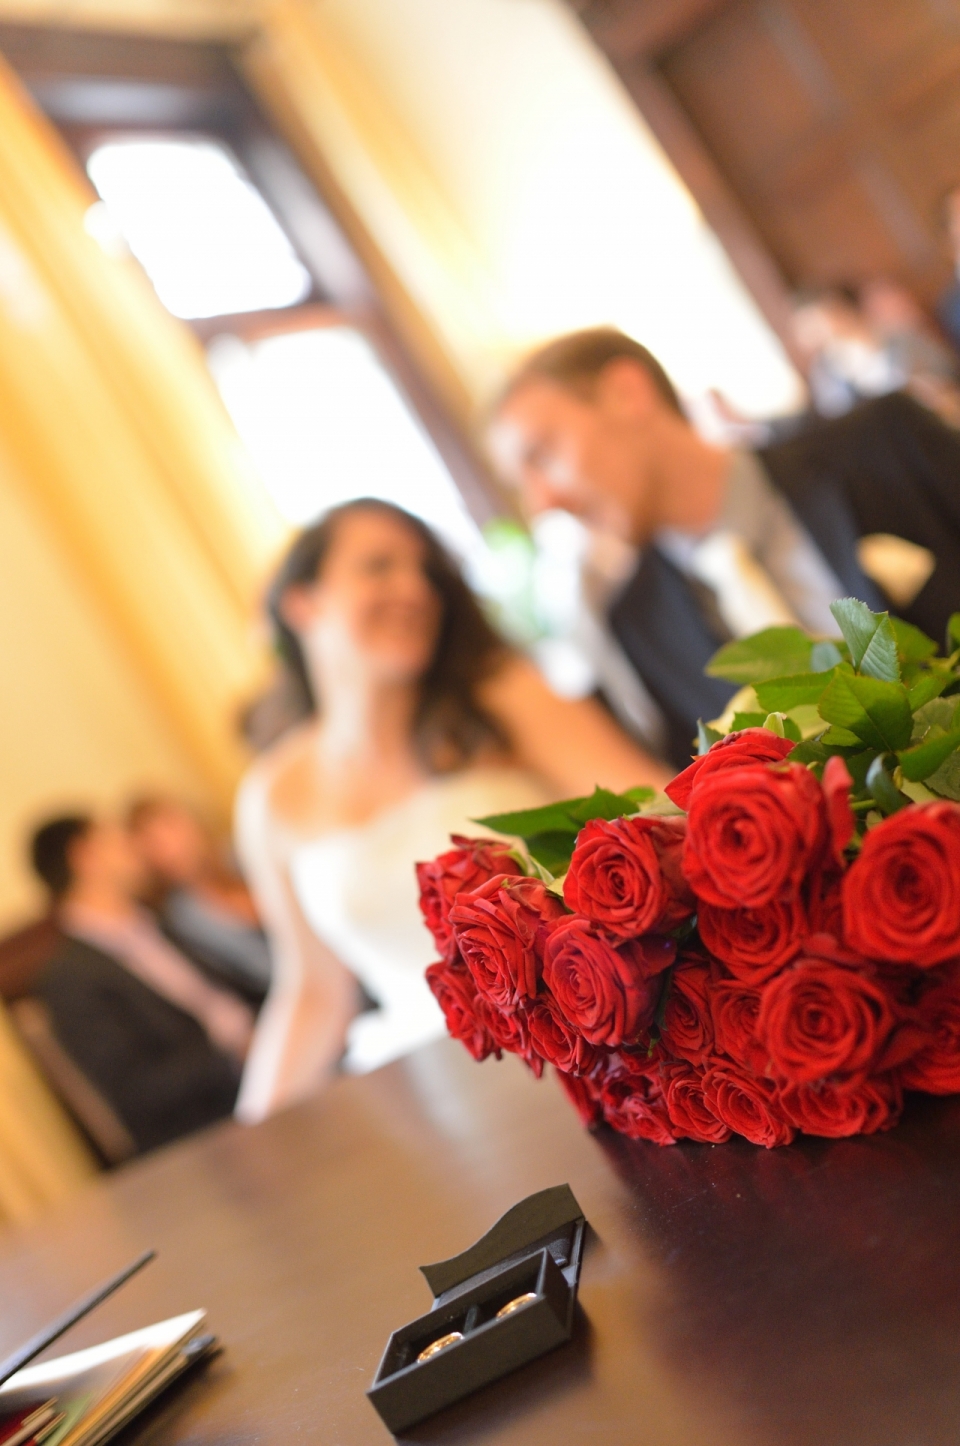 展厅桌上红色玫瑰花朵特写